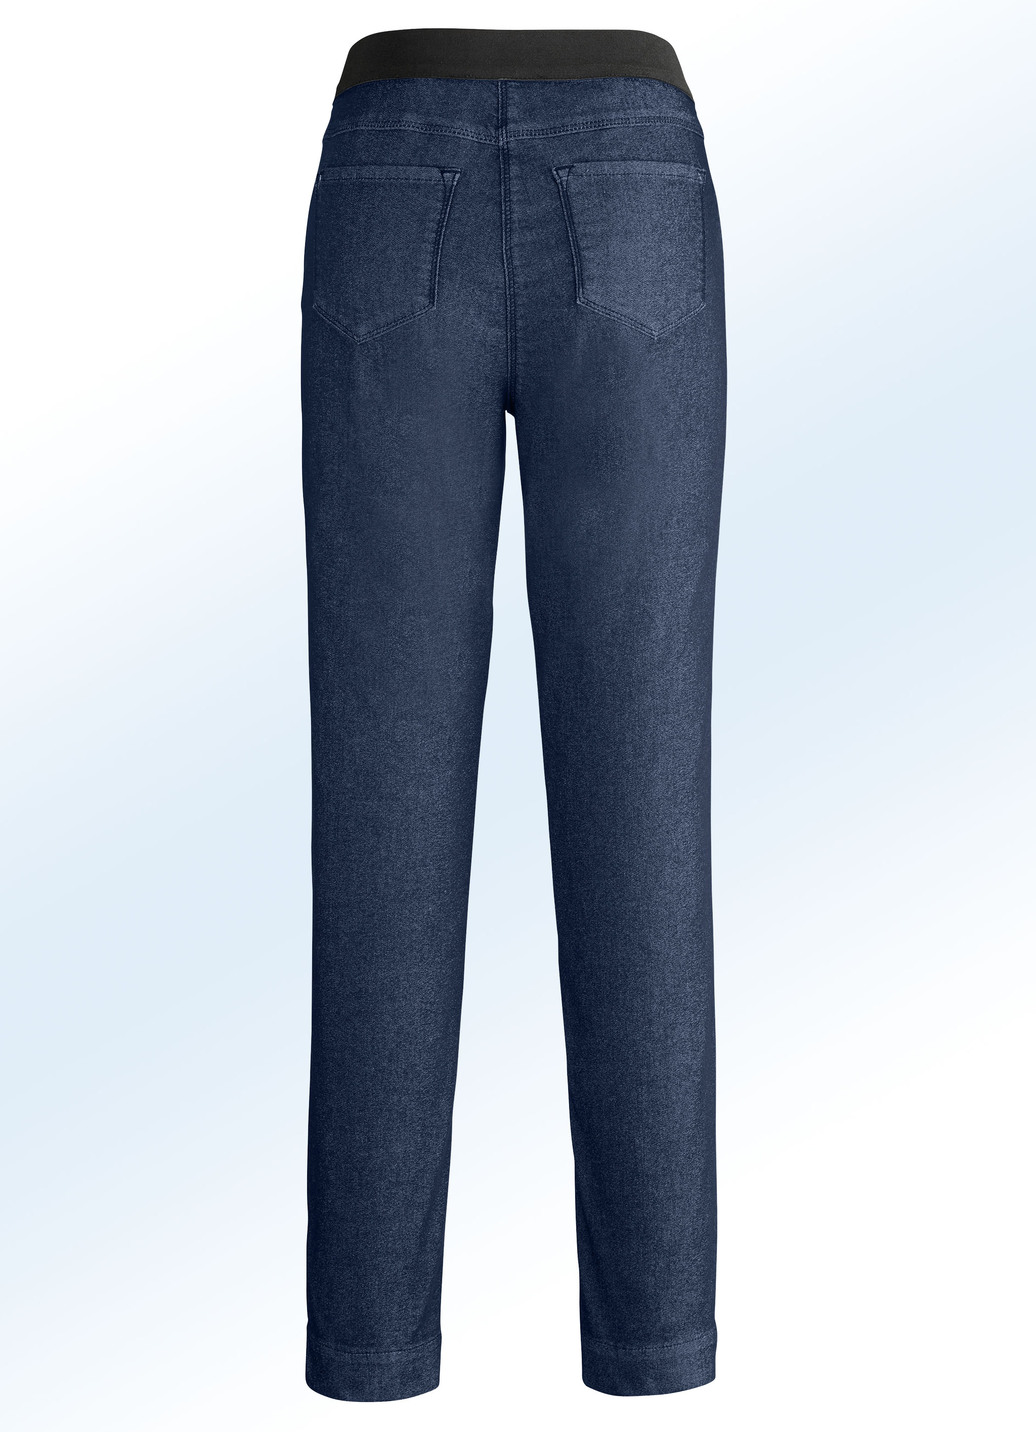 Superbequeme Power-Stretch-Jeans mit spezieller Bundverarbeitung, Dunkelblau, Größe 38 von COSMA